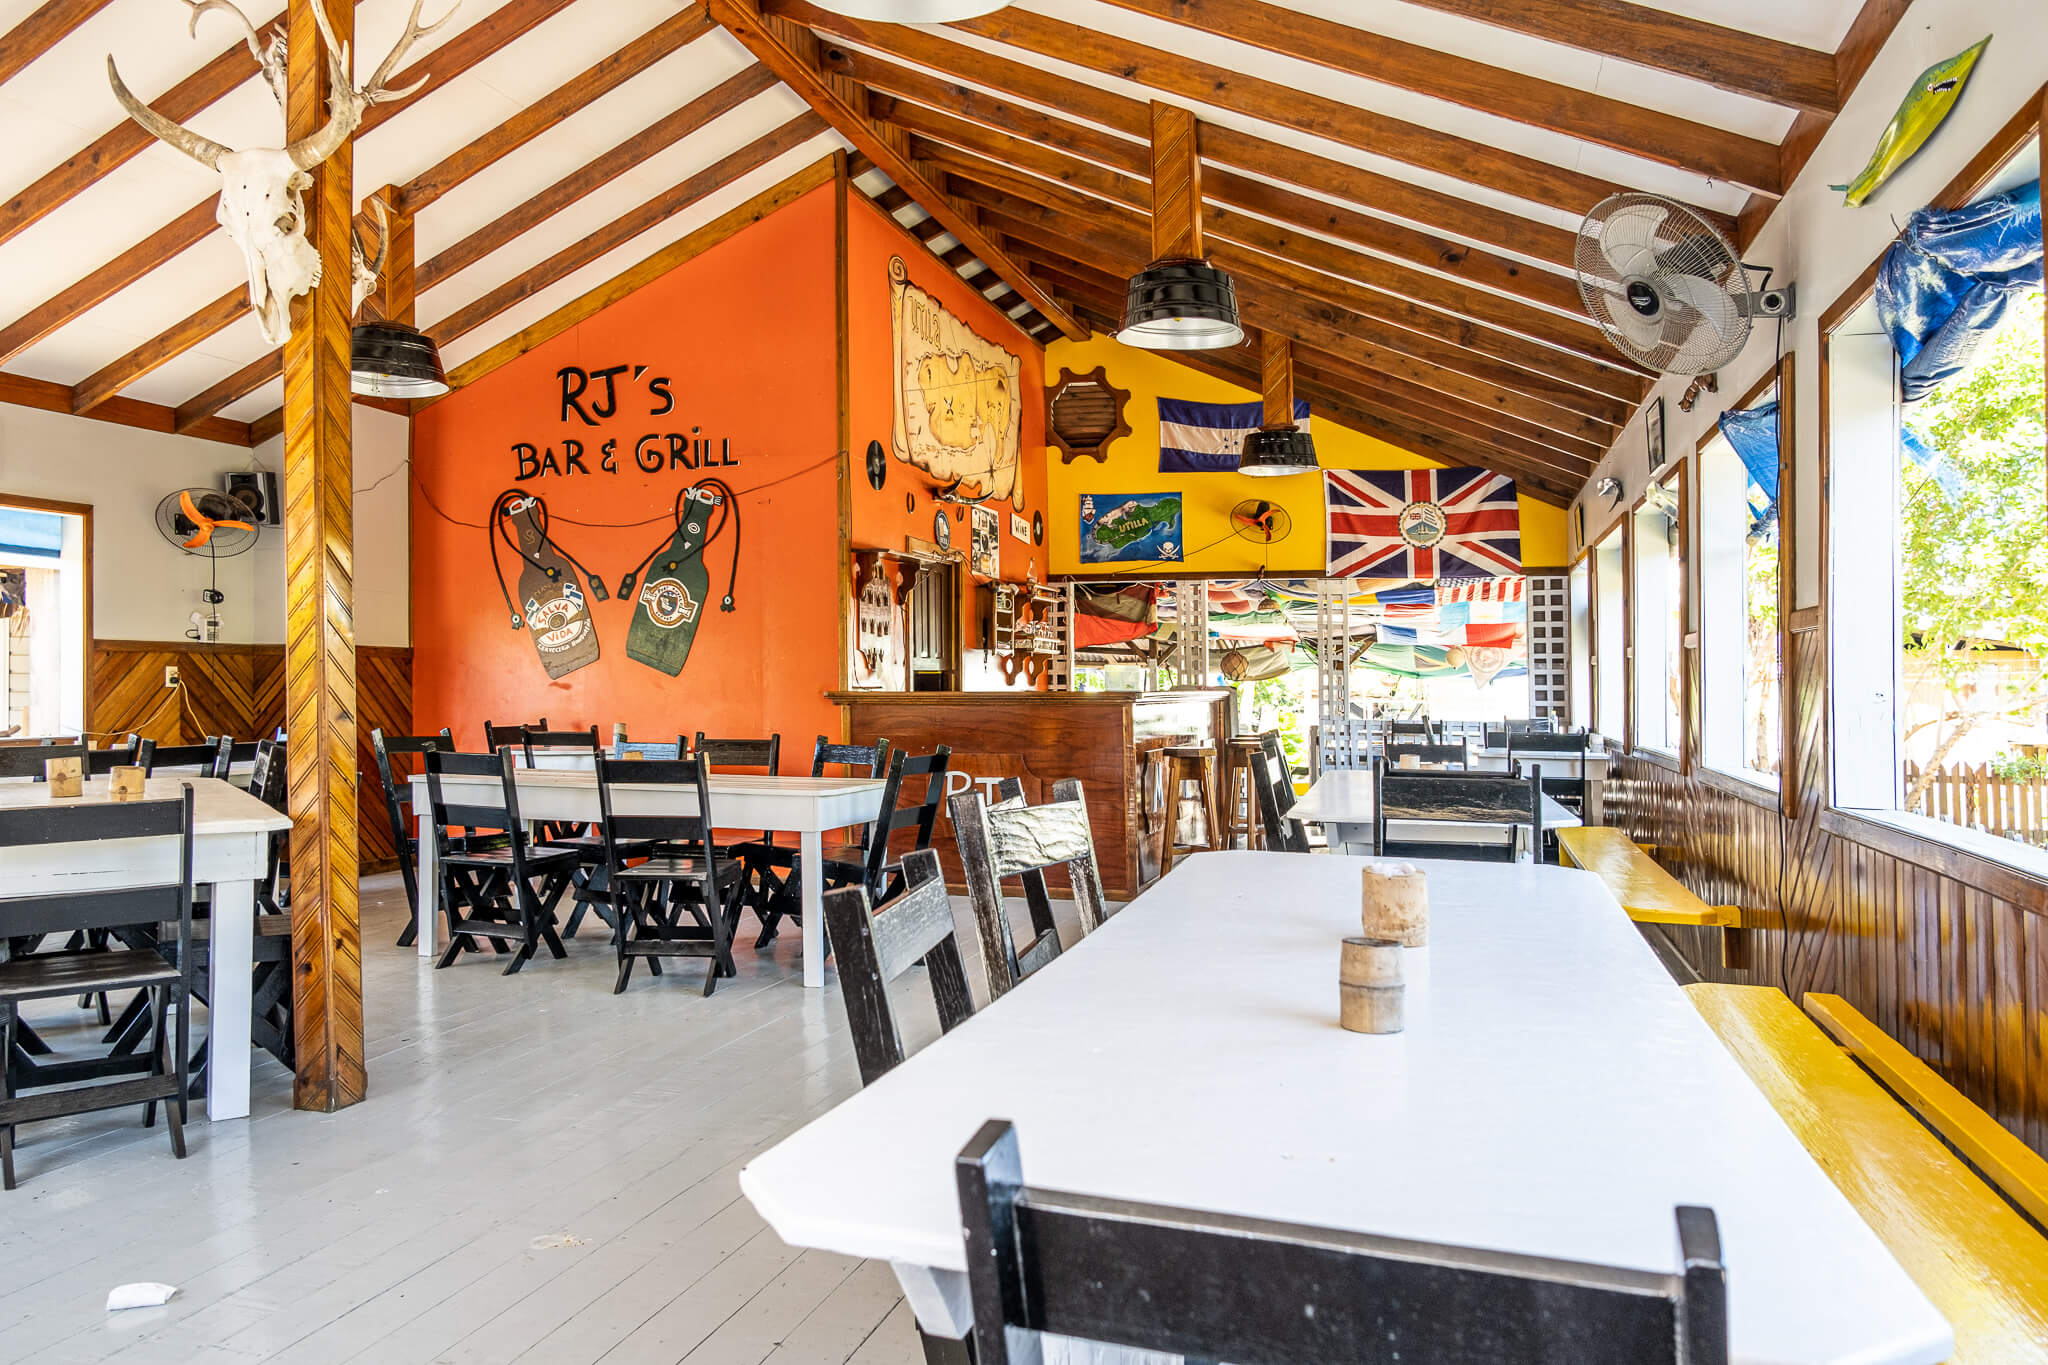 Inside RJ’s Bar & Grill in Utila